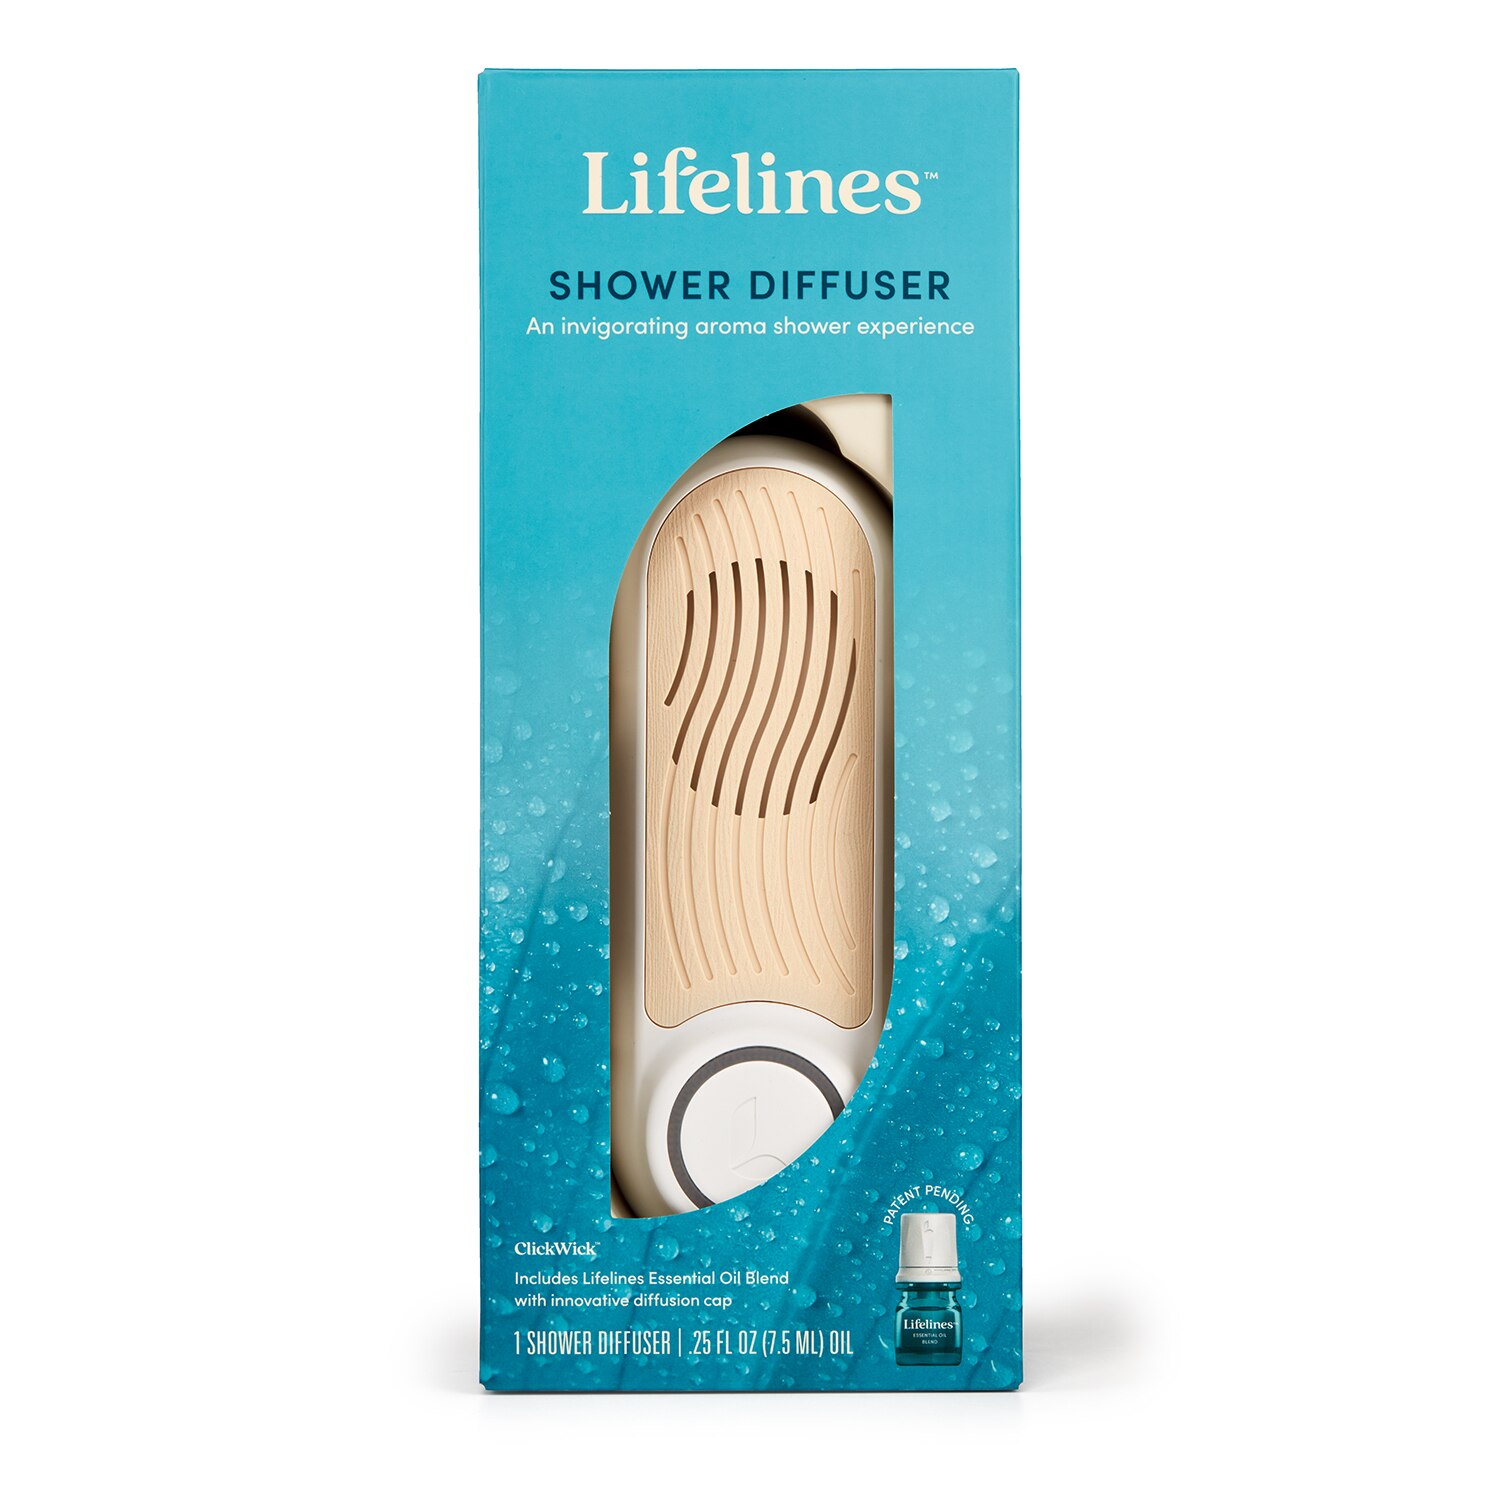 Lifelines Shower Diffuser Plus Essential Oil Blend - 1 , CVS